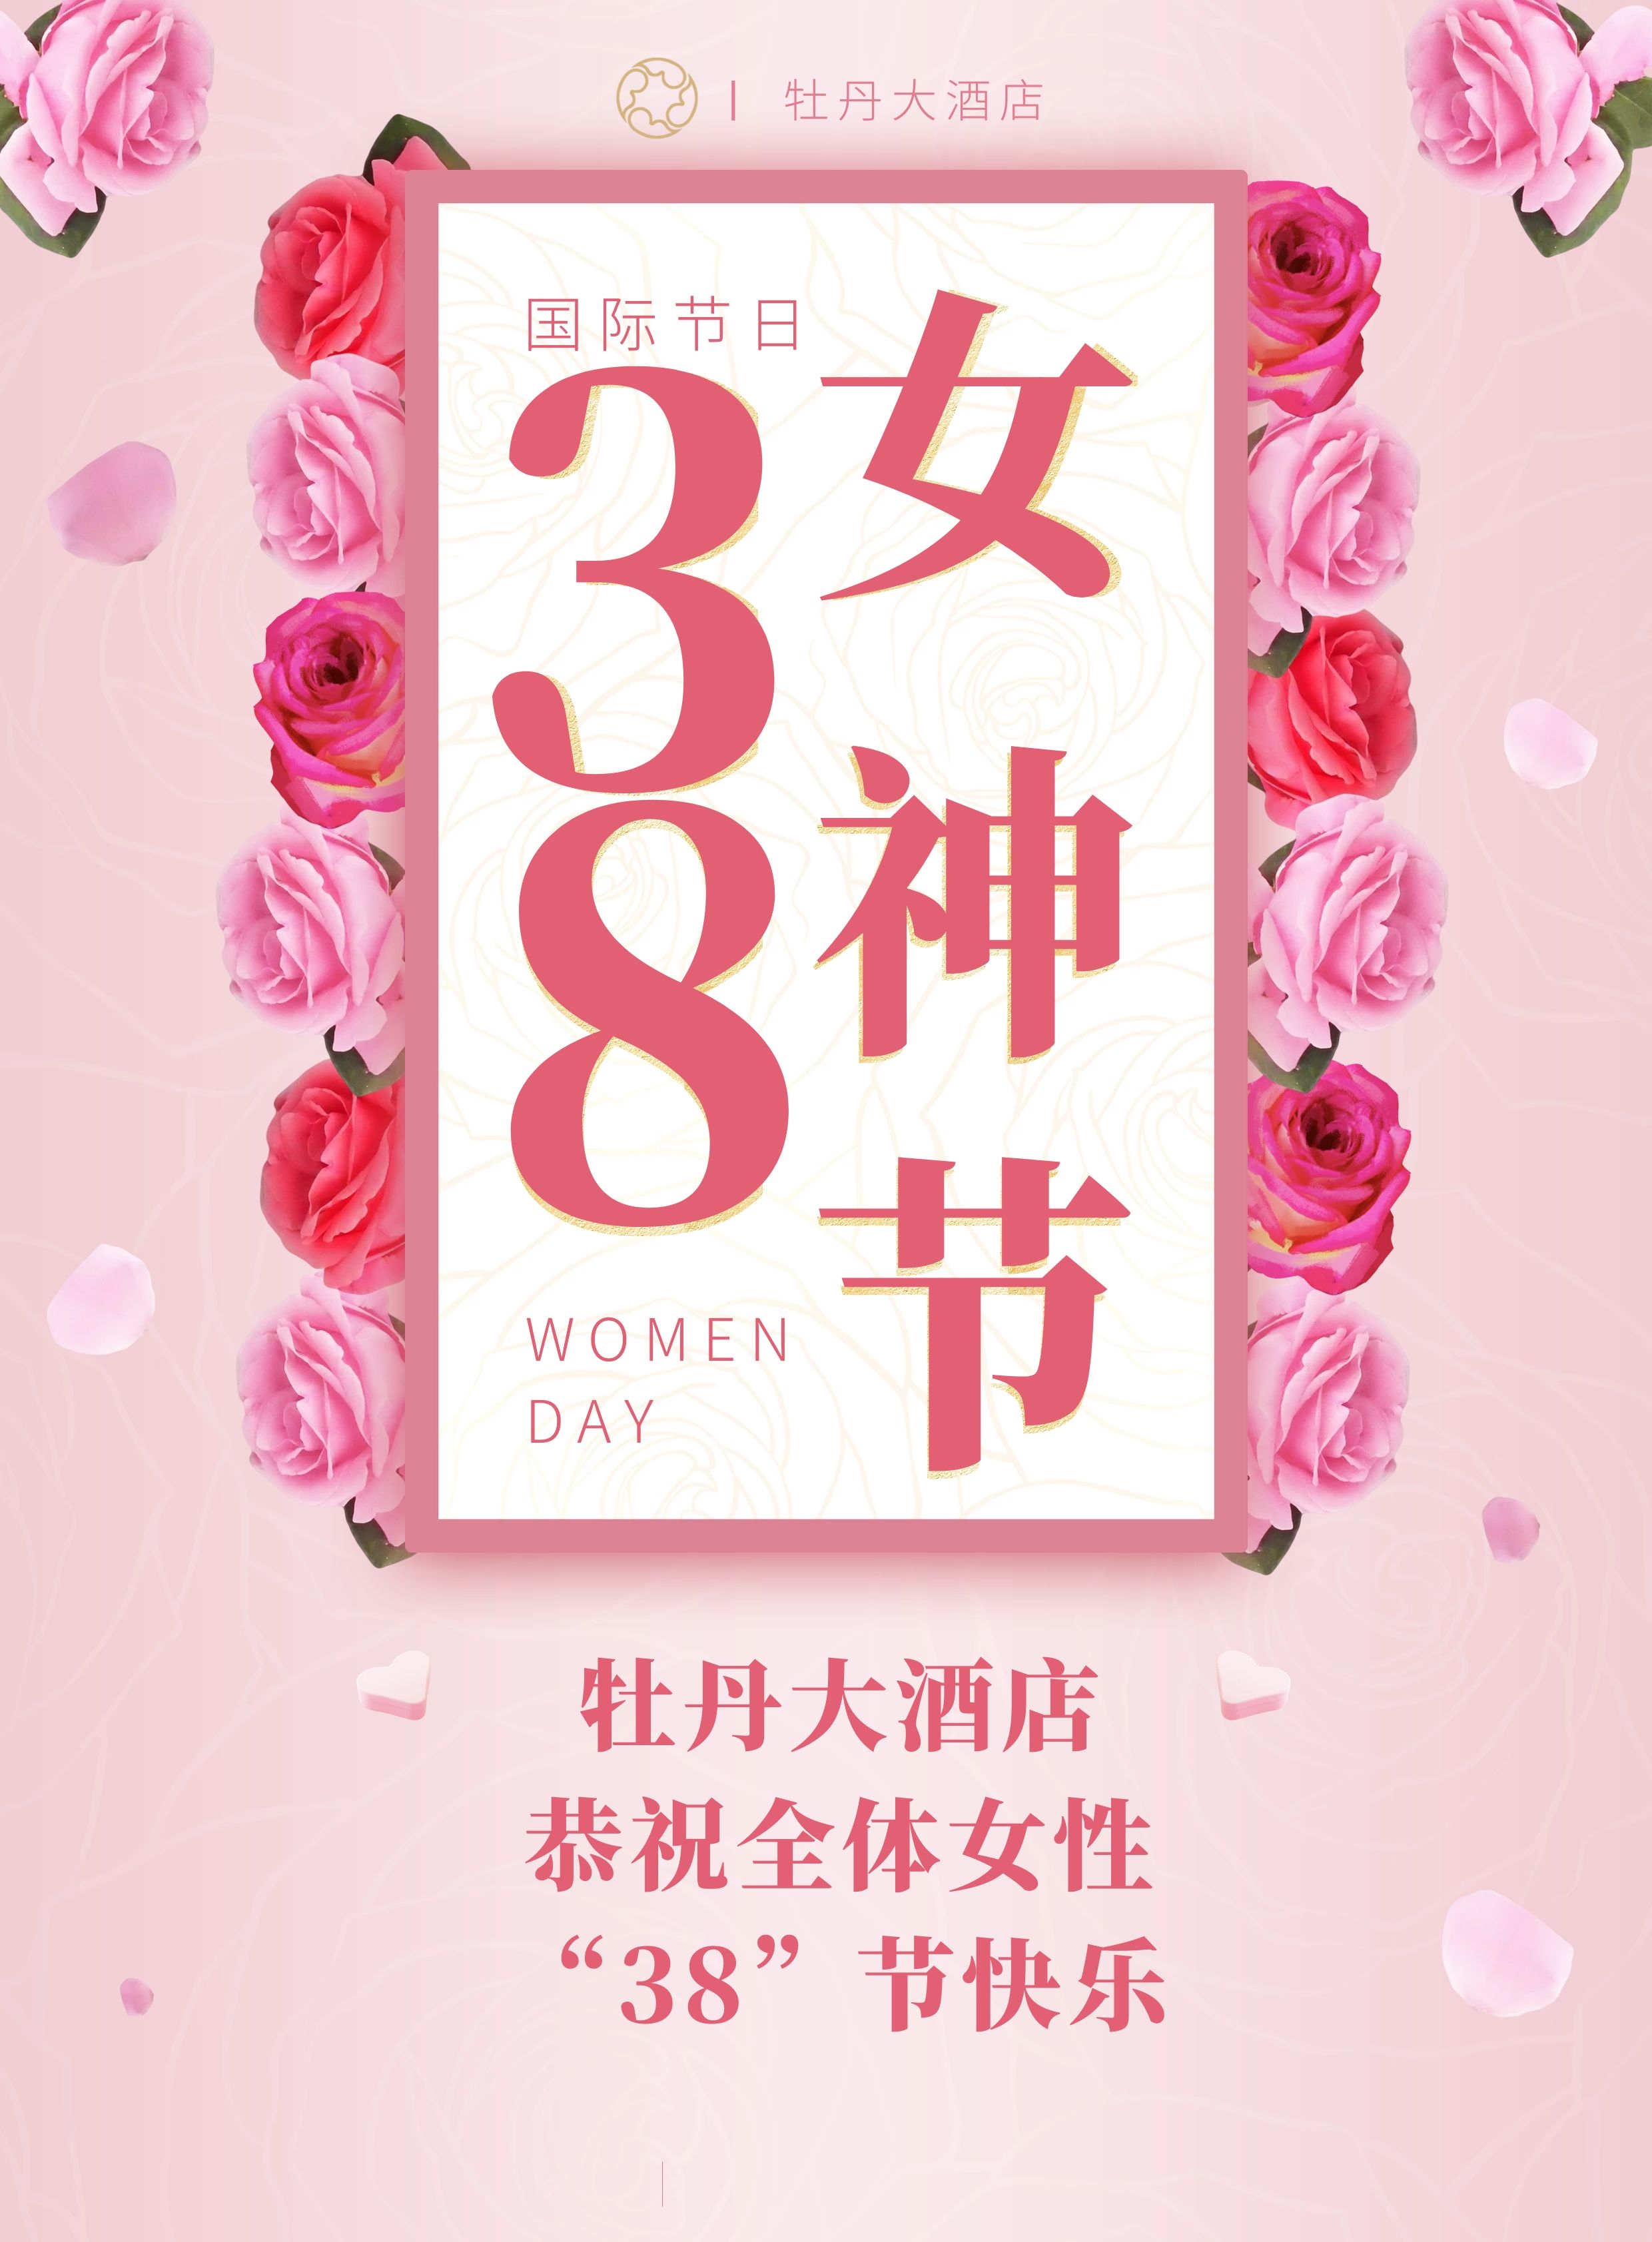 牡丹大酒店恭祝全体女性“38”节快乐(图1)